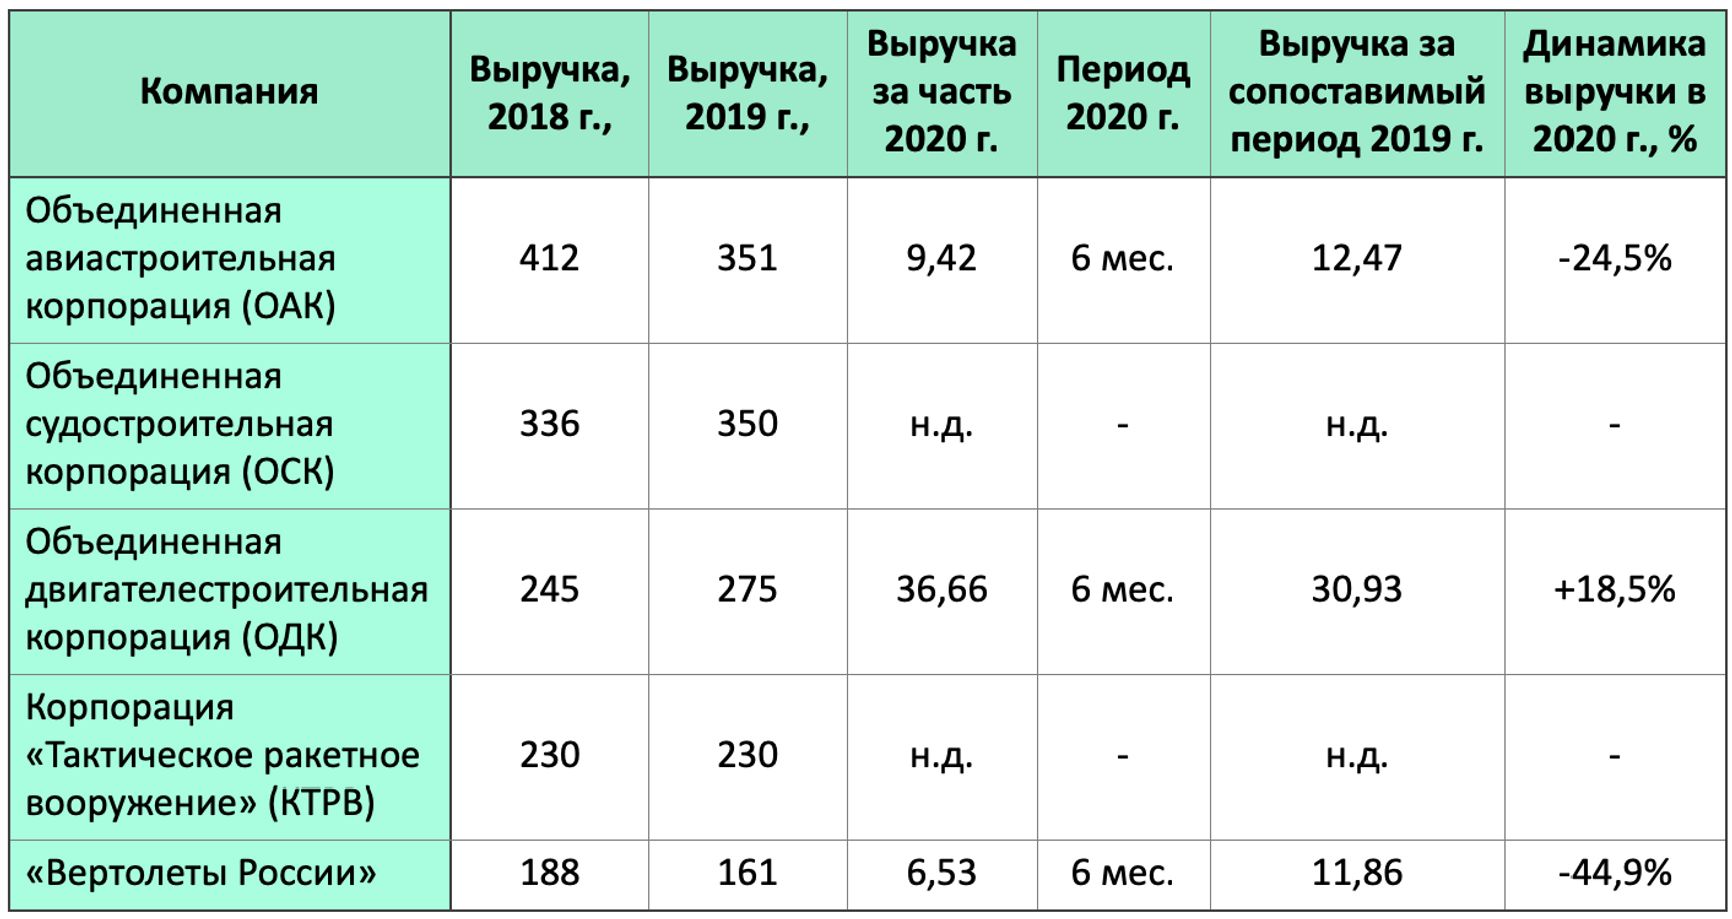 Динамика выручки крупнейших российских предприятий ОПК по открытым источникам, млрд руб.